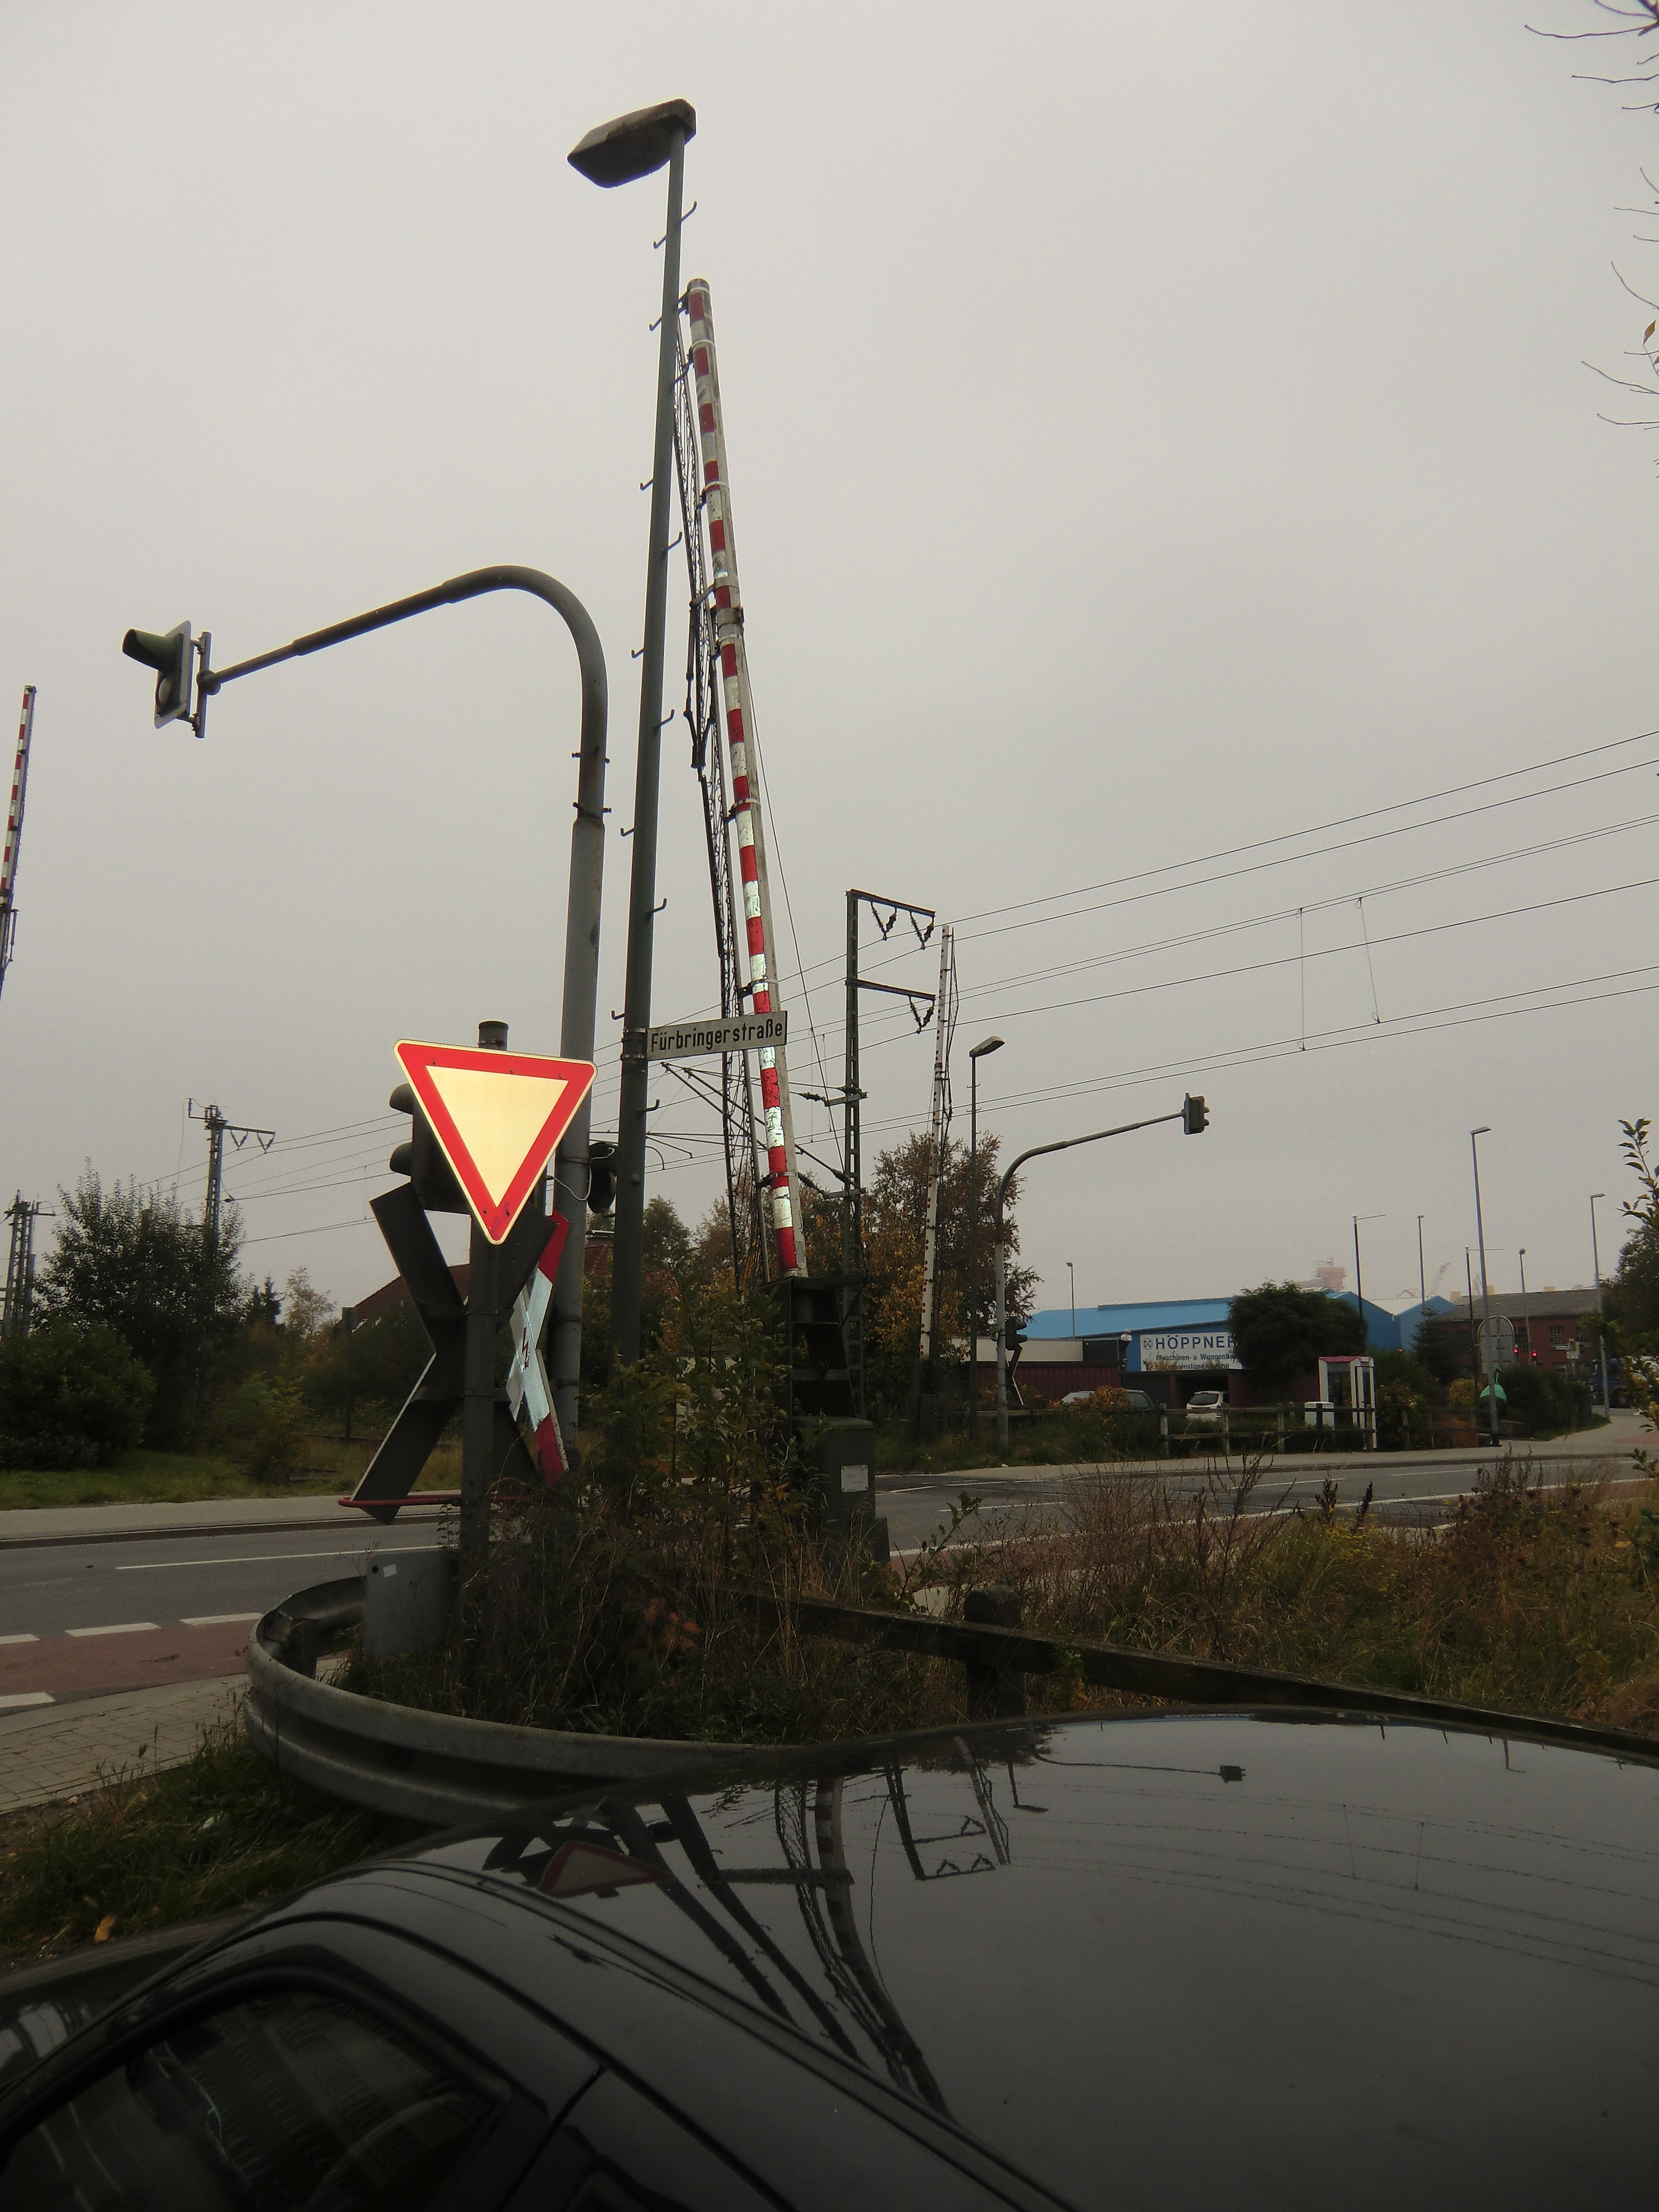 Farbfoto: Straßenschild von der Fürbringerstraße in Emden im Oktober des Jahres 2012. Foto: Erwin Thomasius.